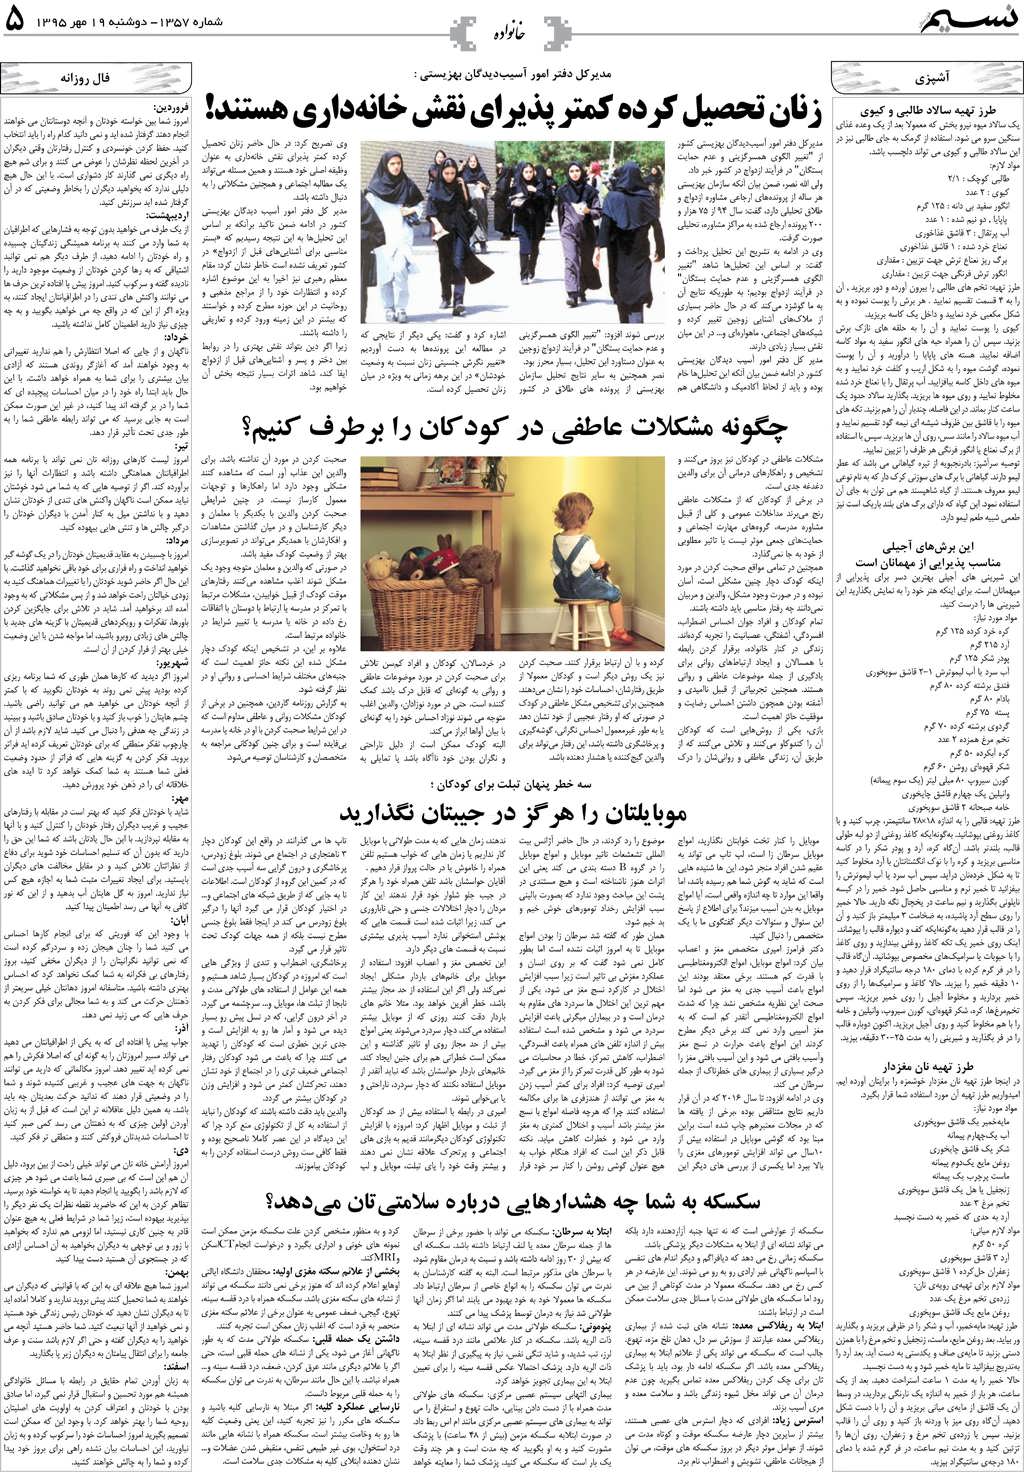 صفحه خانواده روزنامه نسیم شماره 1357